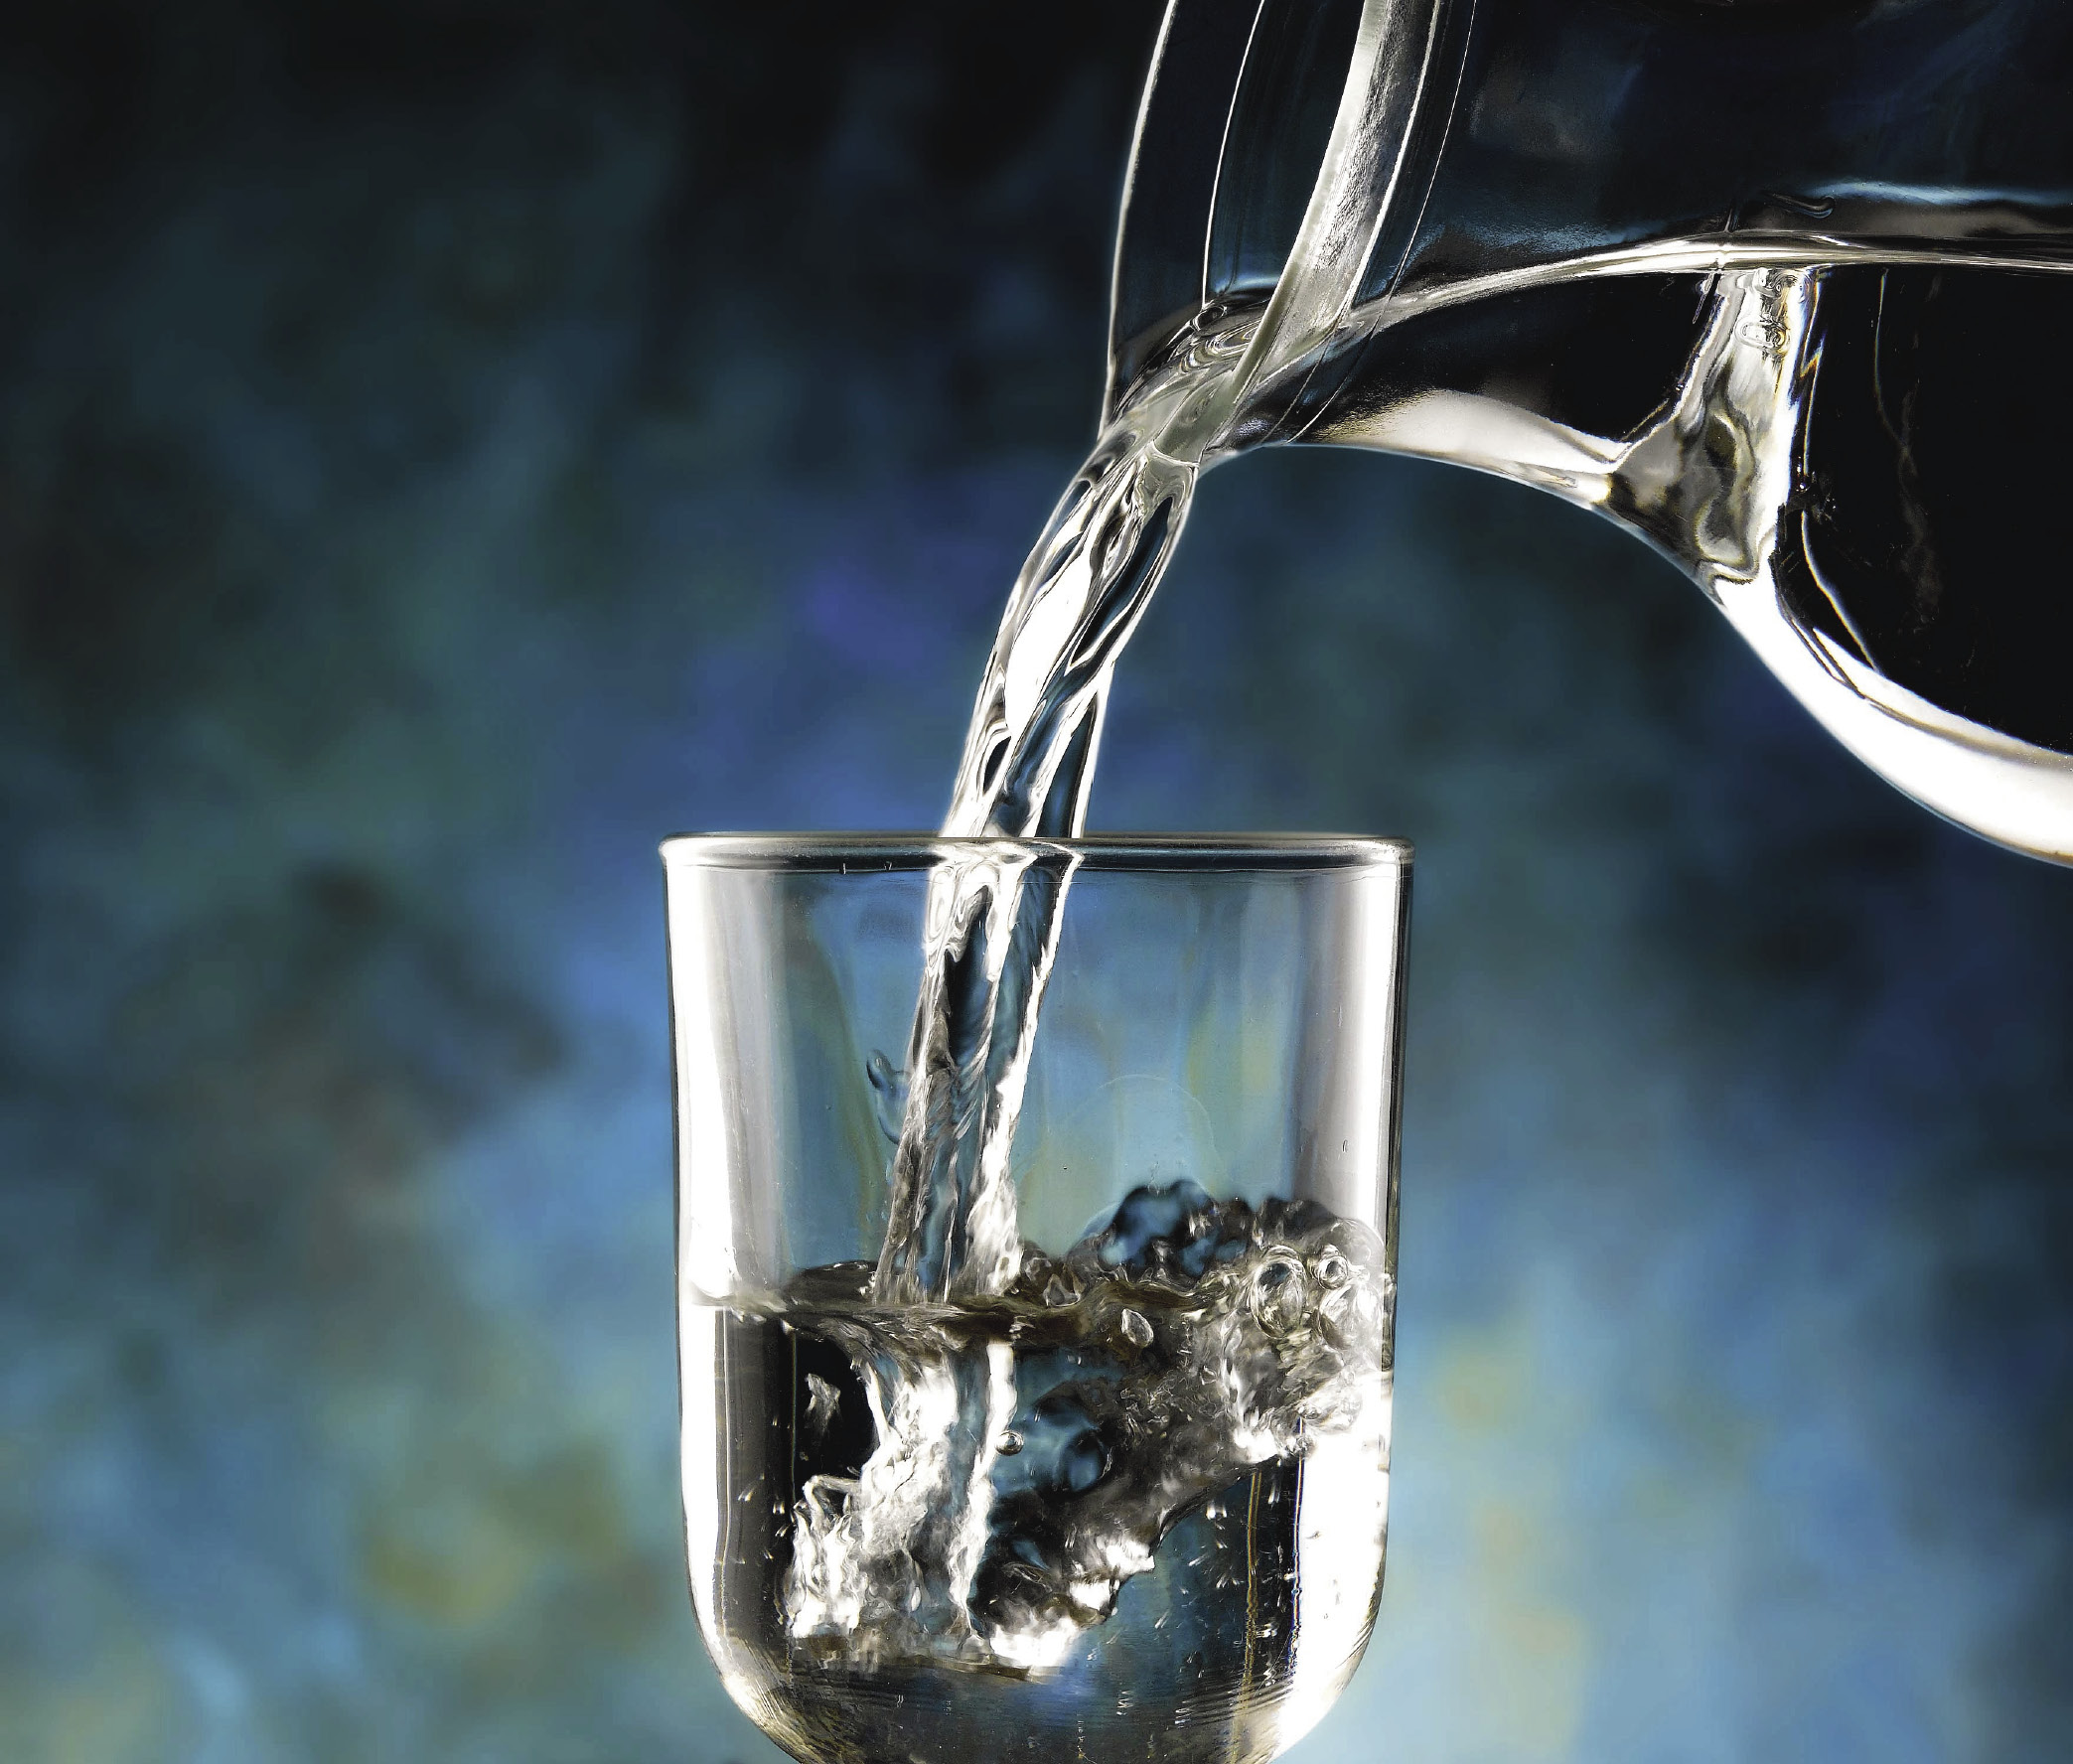 Qualità dell'acqua potabile: come capire se è buona